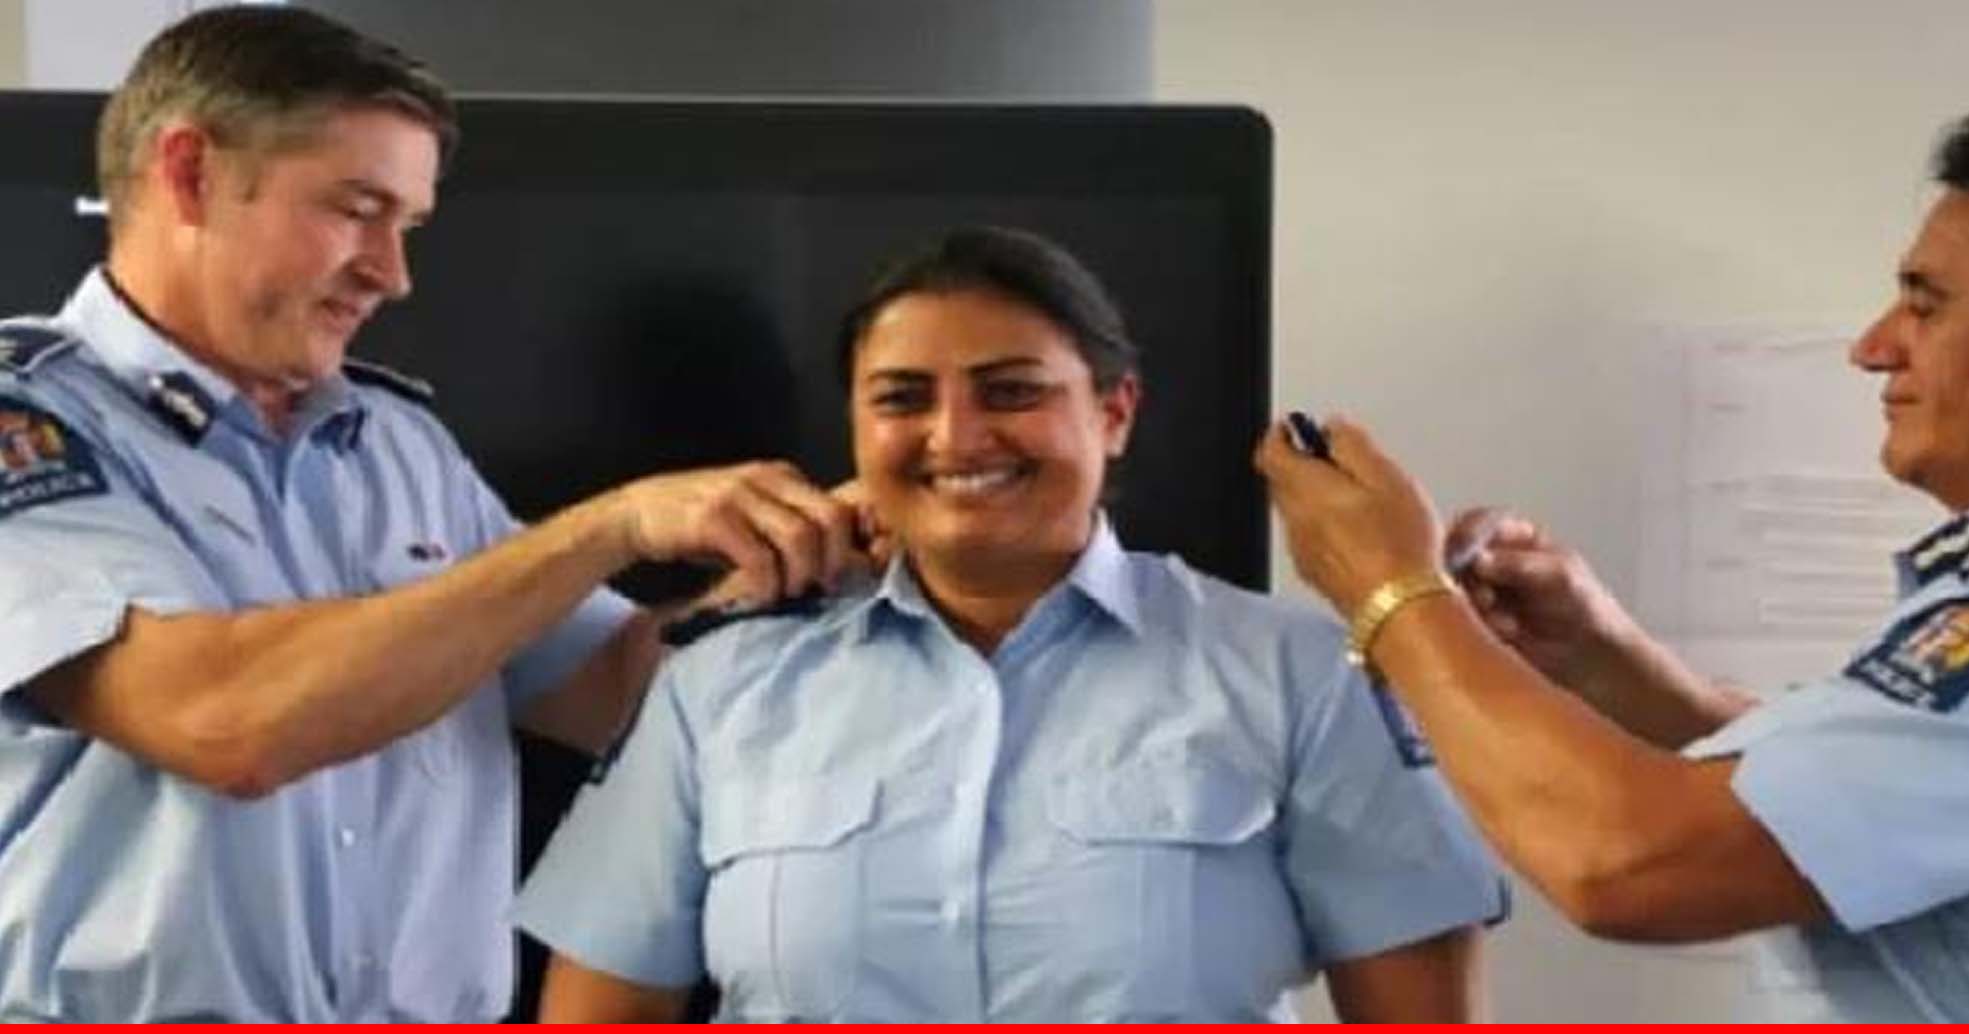 न्यूजीलैंड में पुलिस अधिकारी बनीं मनदीप कौर सिद्धू, इस मुकाम तक पहुंचने वालीं पहली भारतीय